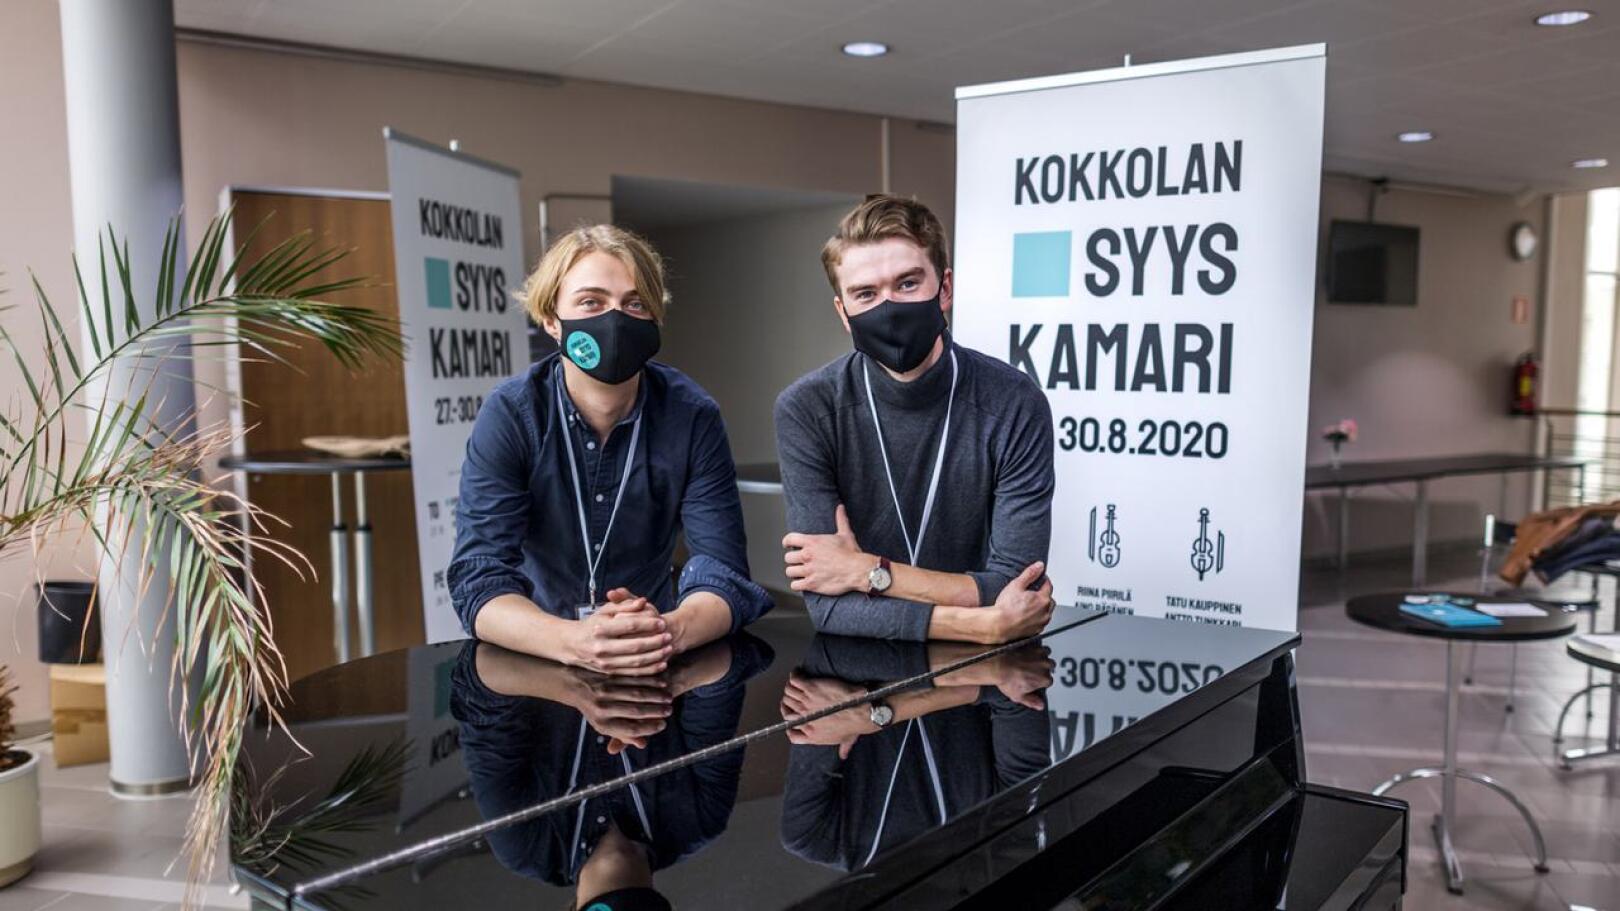 Pauli Pappinen ja Antto Tunkkari ovat ottaneet konserttijärjestelyissä turvallisuuden huomioon. 